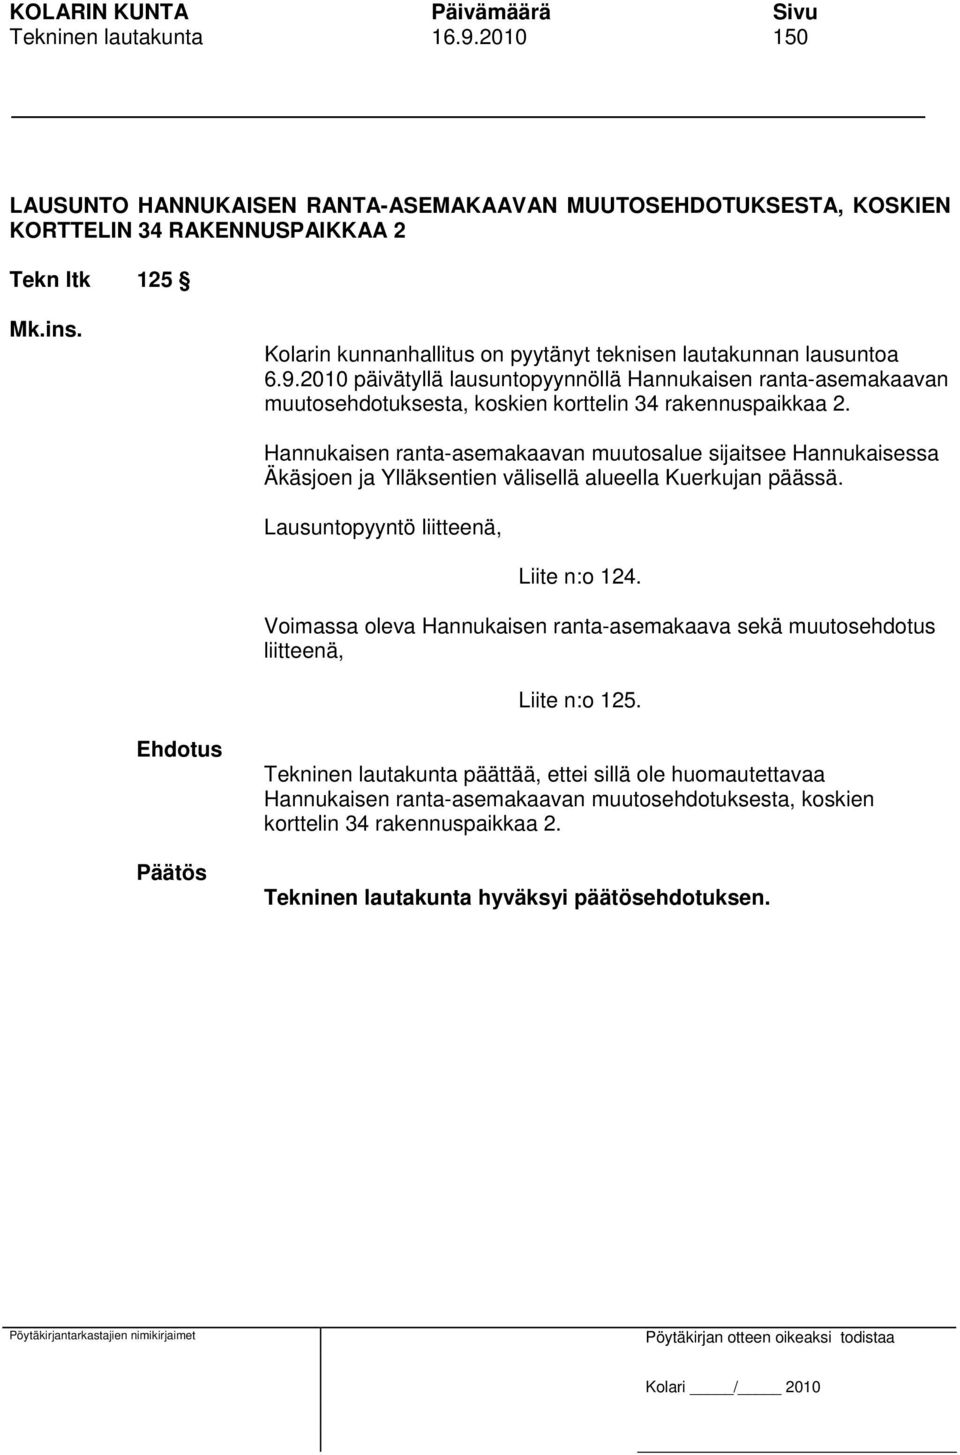 2010 päivätyllä lausuntopyynnöllä Hannukaisen ranta-asemakaavan muutosehdotuksesta, koskien korttelin 34 rakennuspaikkaa 2.